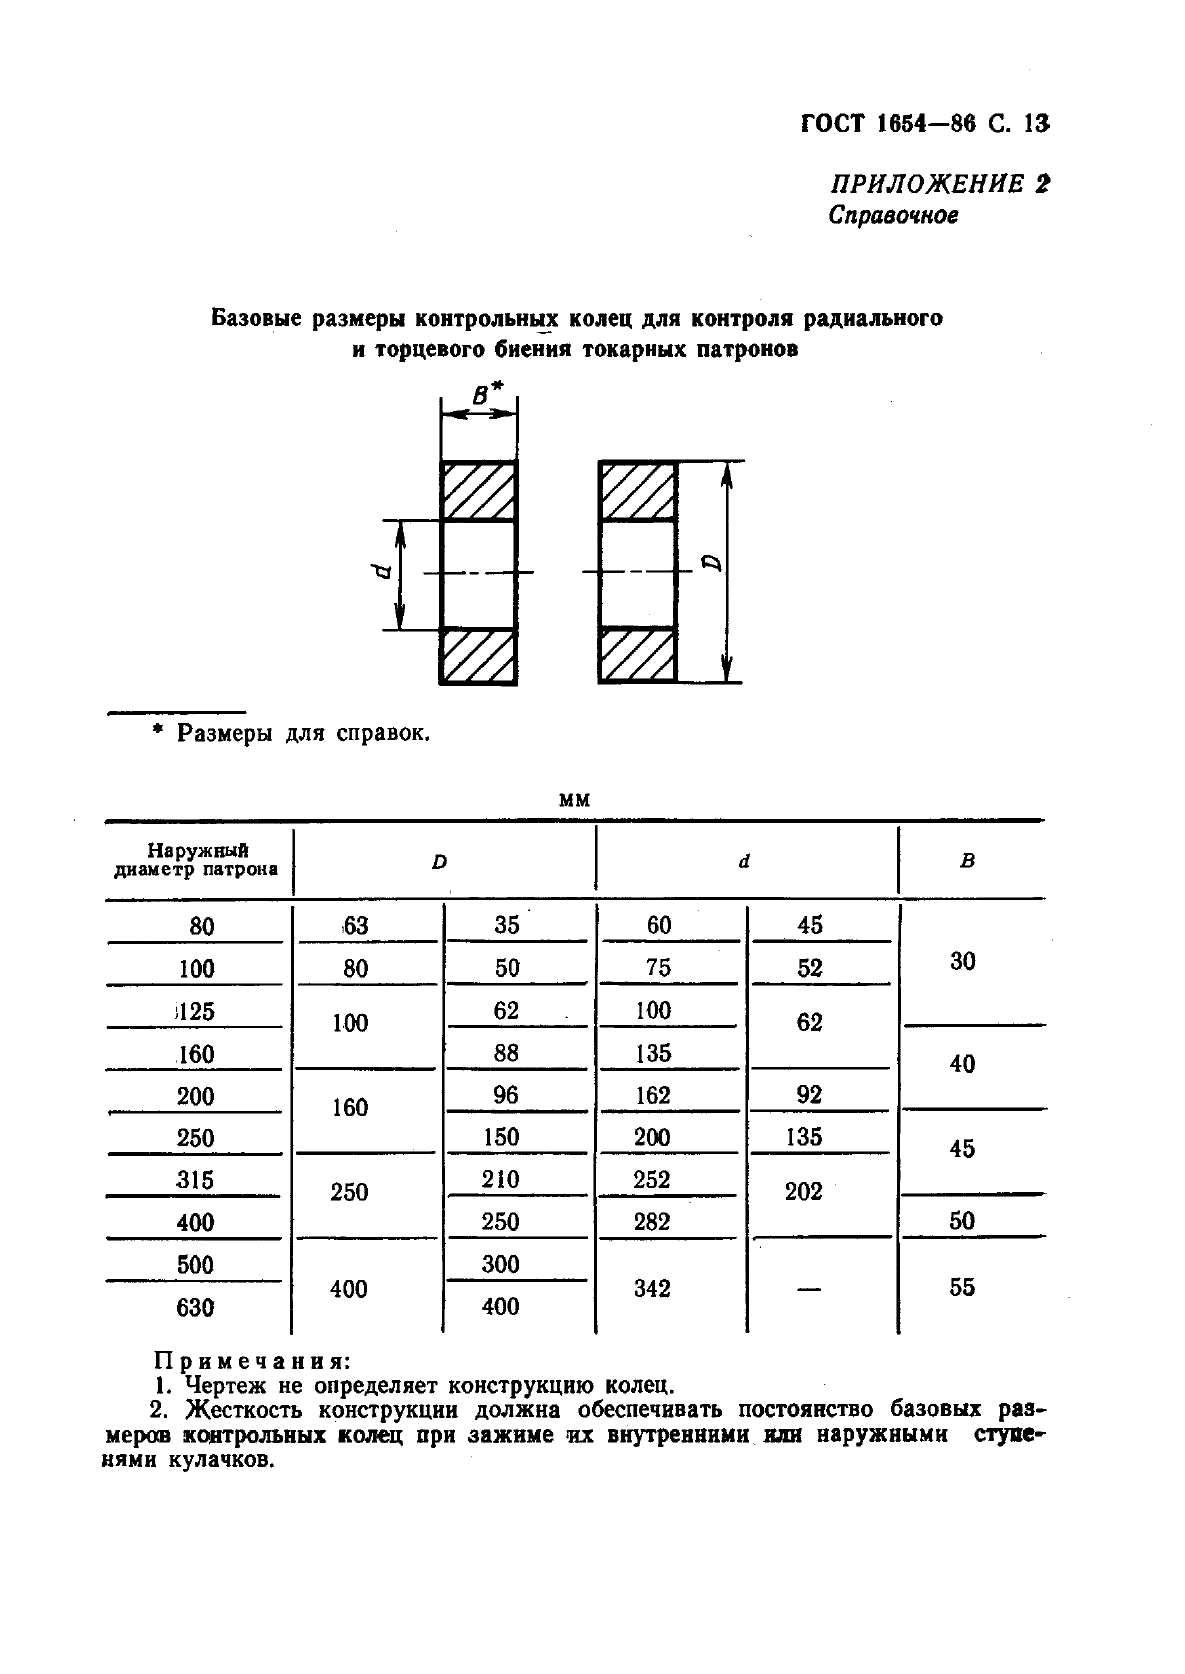 ГОСТ 1654-86 Патроны токарные общего назначения. Общие технические условия (фото 14 из 15)